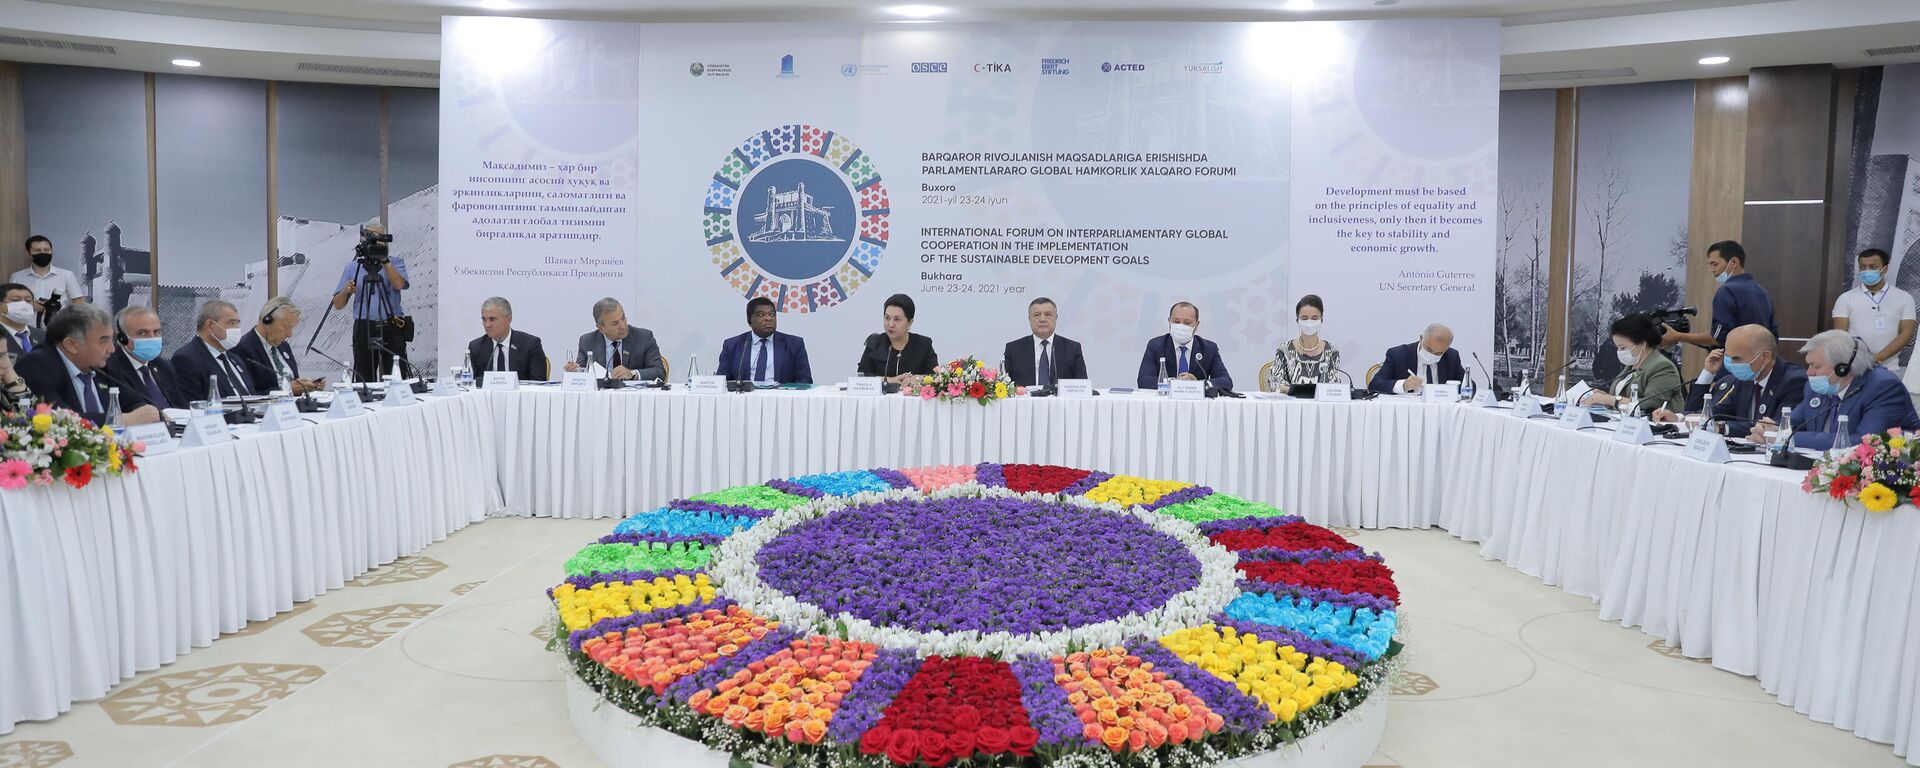 В Бухаре стартовал  Международный форум глобального межпарламентского сотрудничества в реализации Целей устойчивого развития - Sputnik Узбекистан, 1920, 23.06.2021